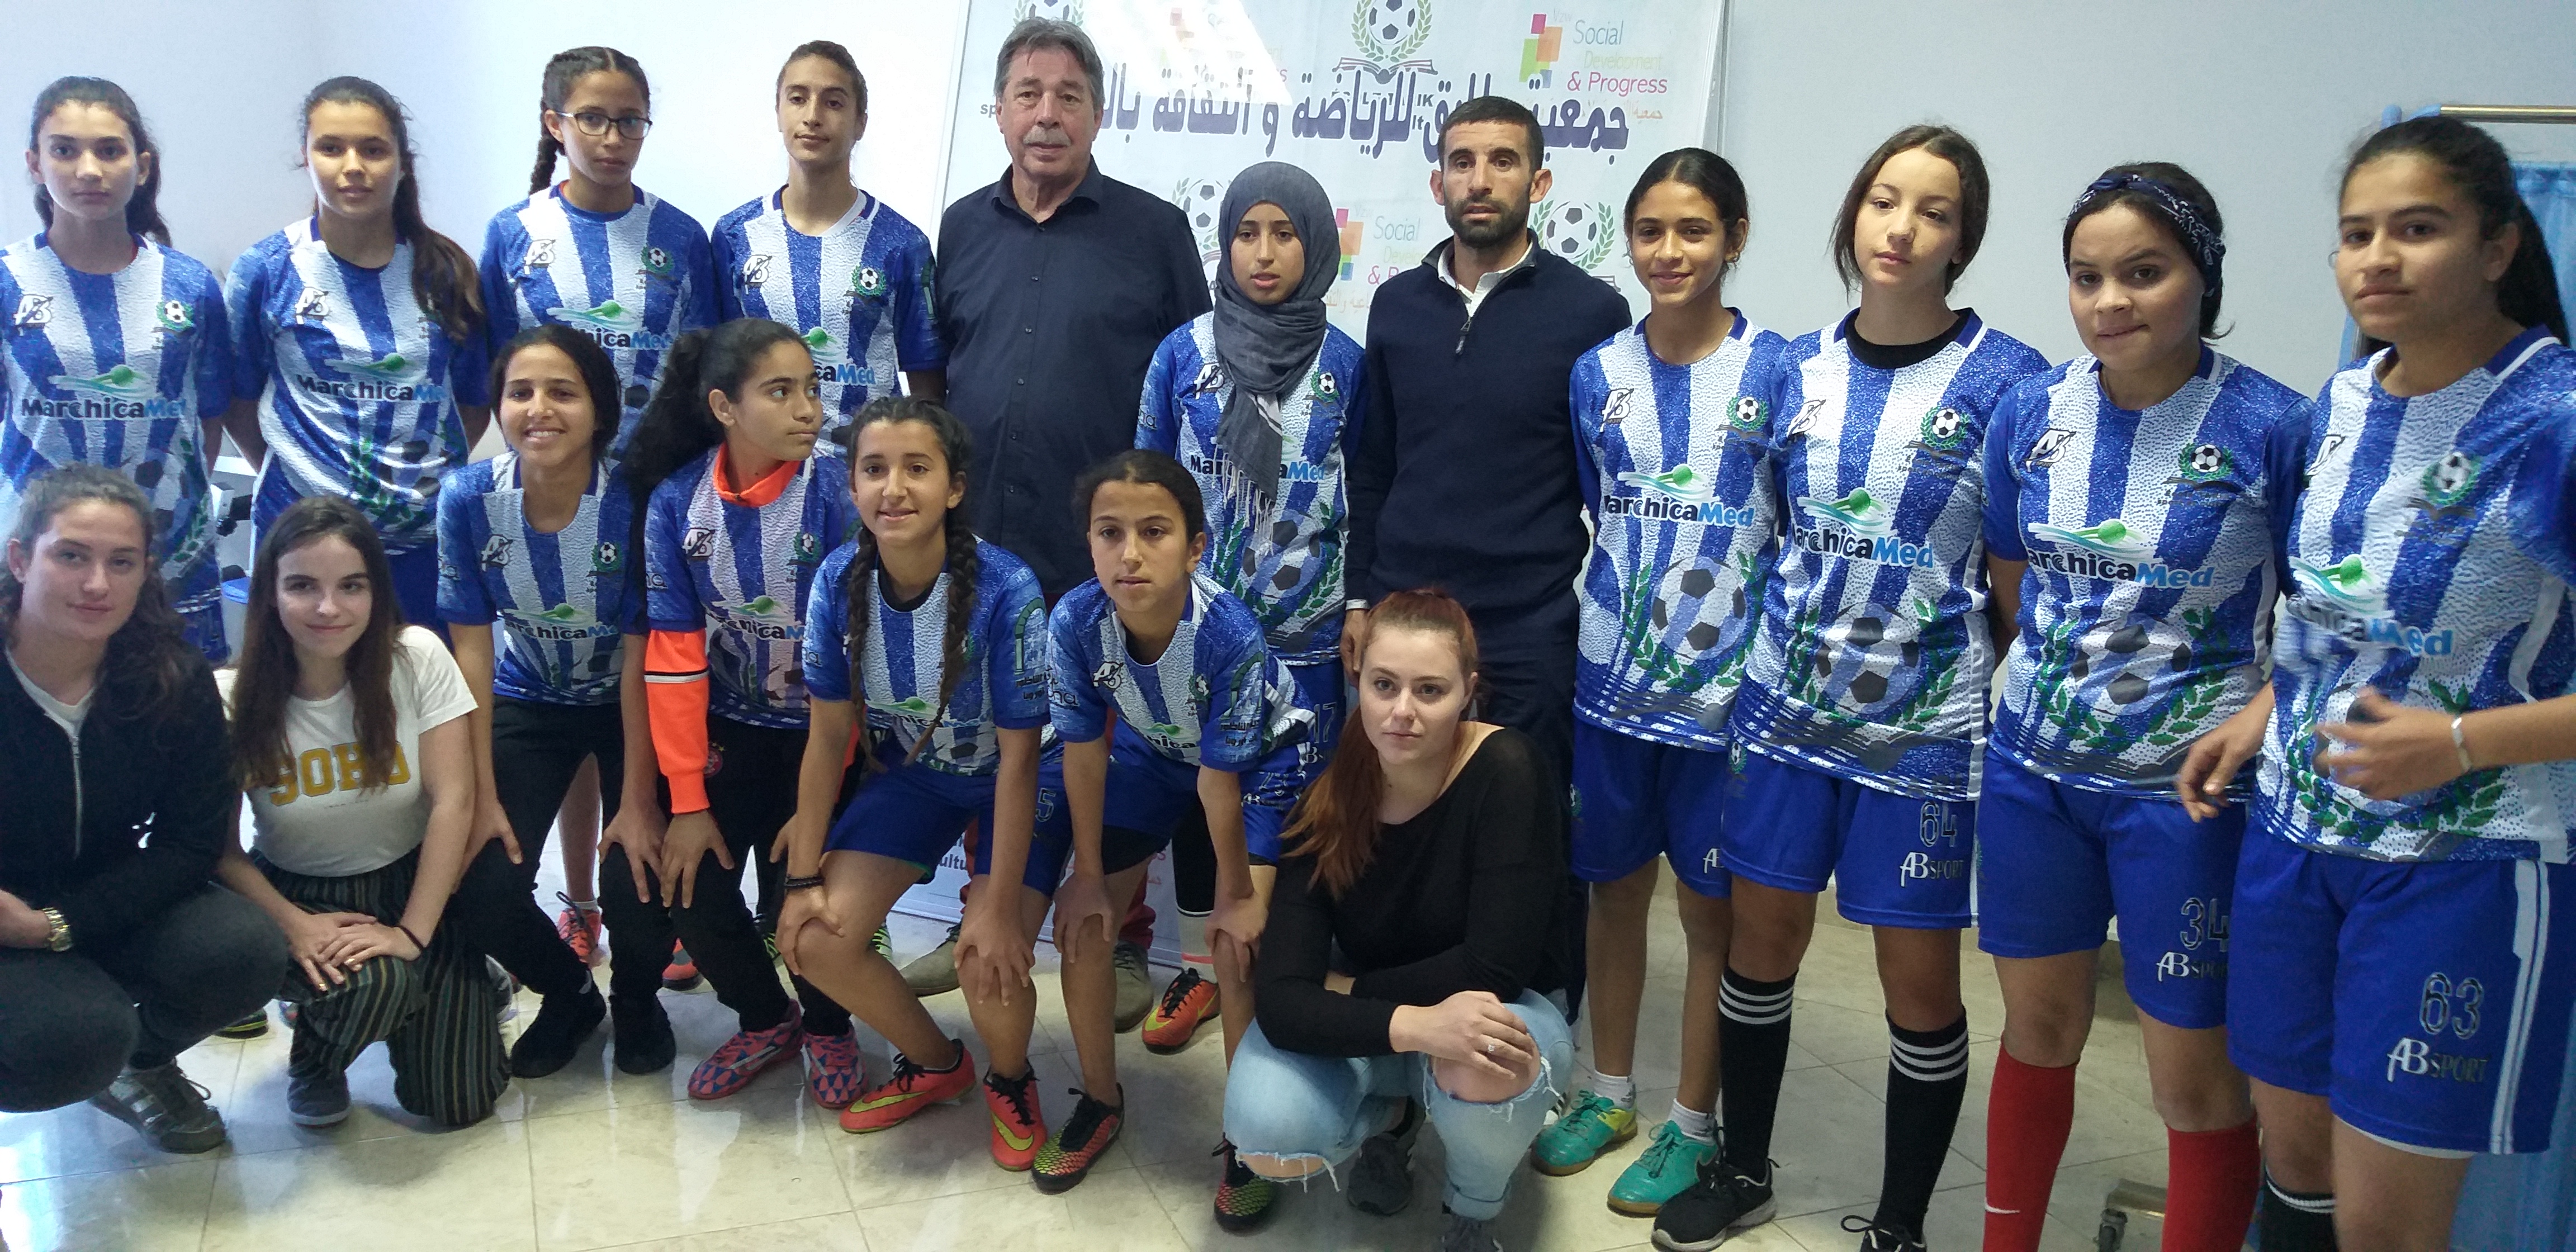 بالفيديو : «لأول مرة» جمعية طارق تتحدى الصورة النمطية بفريق نسائي لكرة القدم في إقليم الناظور